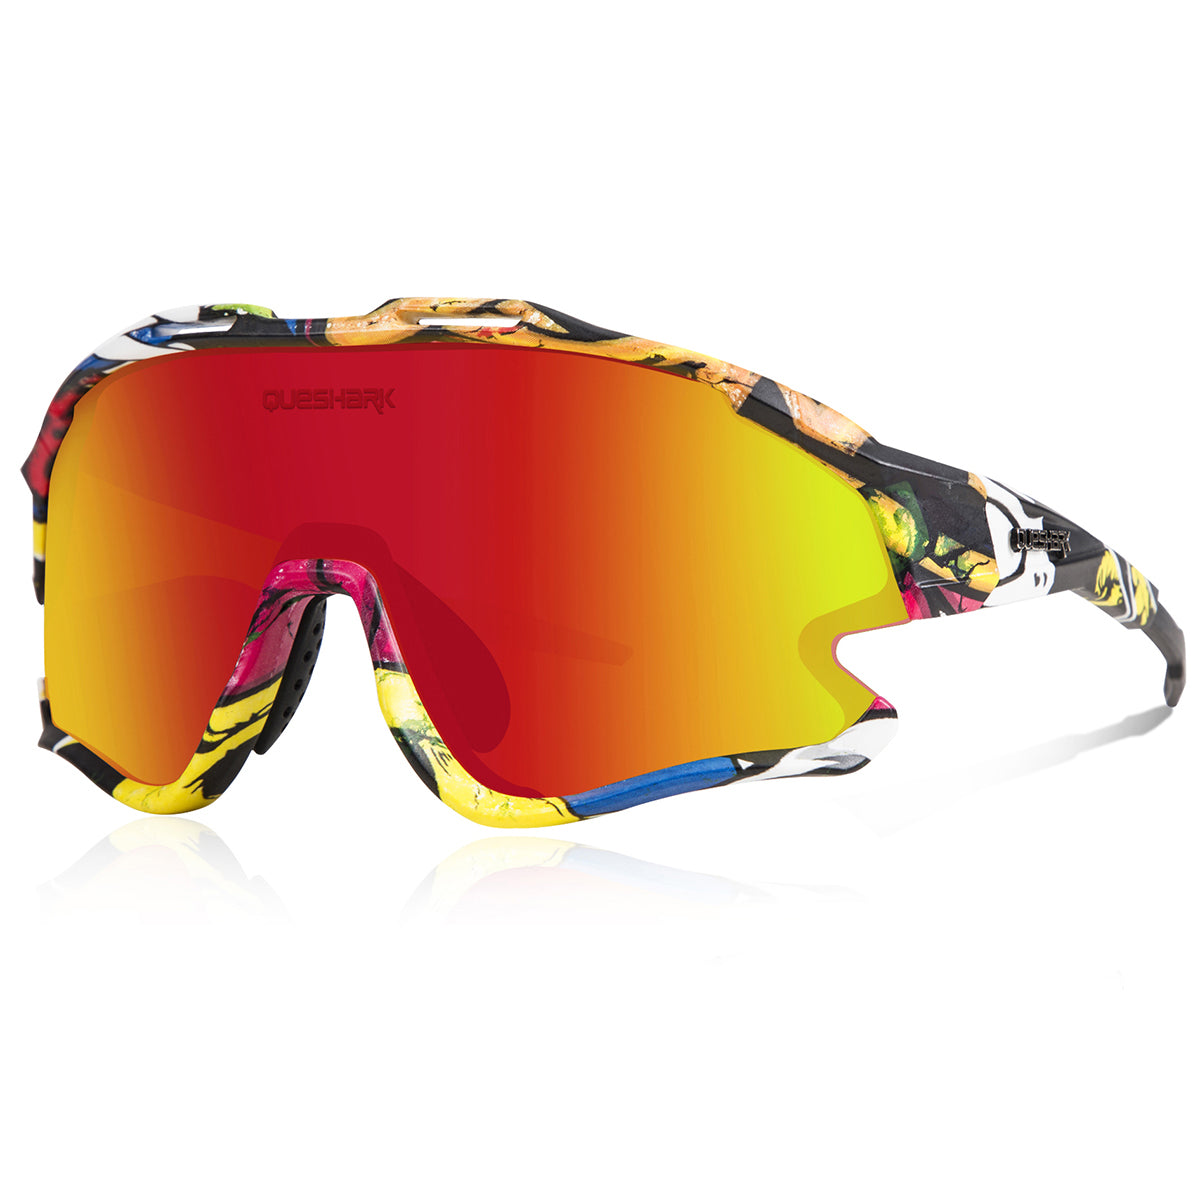 <transcy>Óculos de ciclismo QE51 UV400 vermelhos coloridos óculos de sol para bicicleta 1 polarizada 3 lentes HD</transcy>